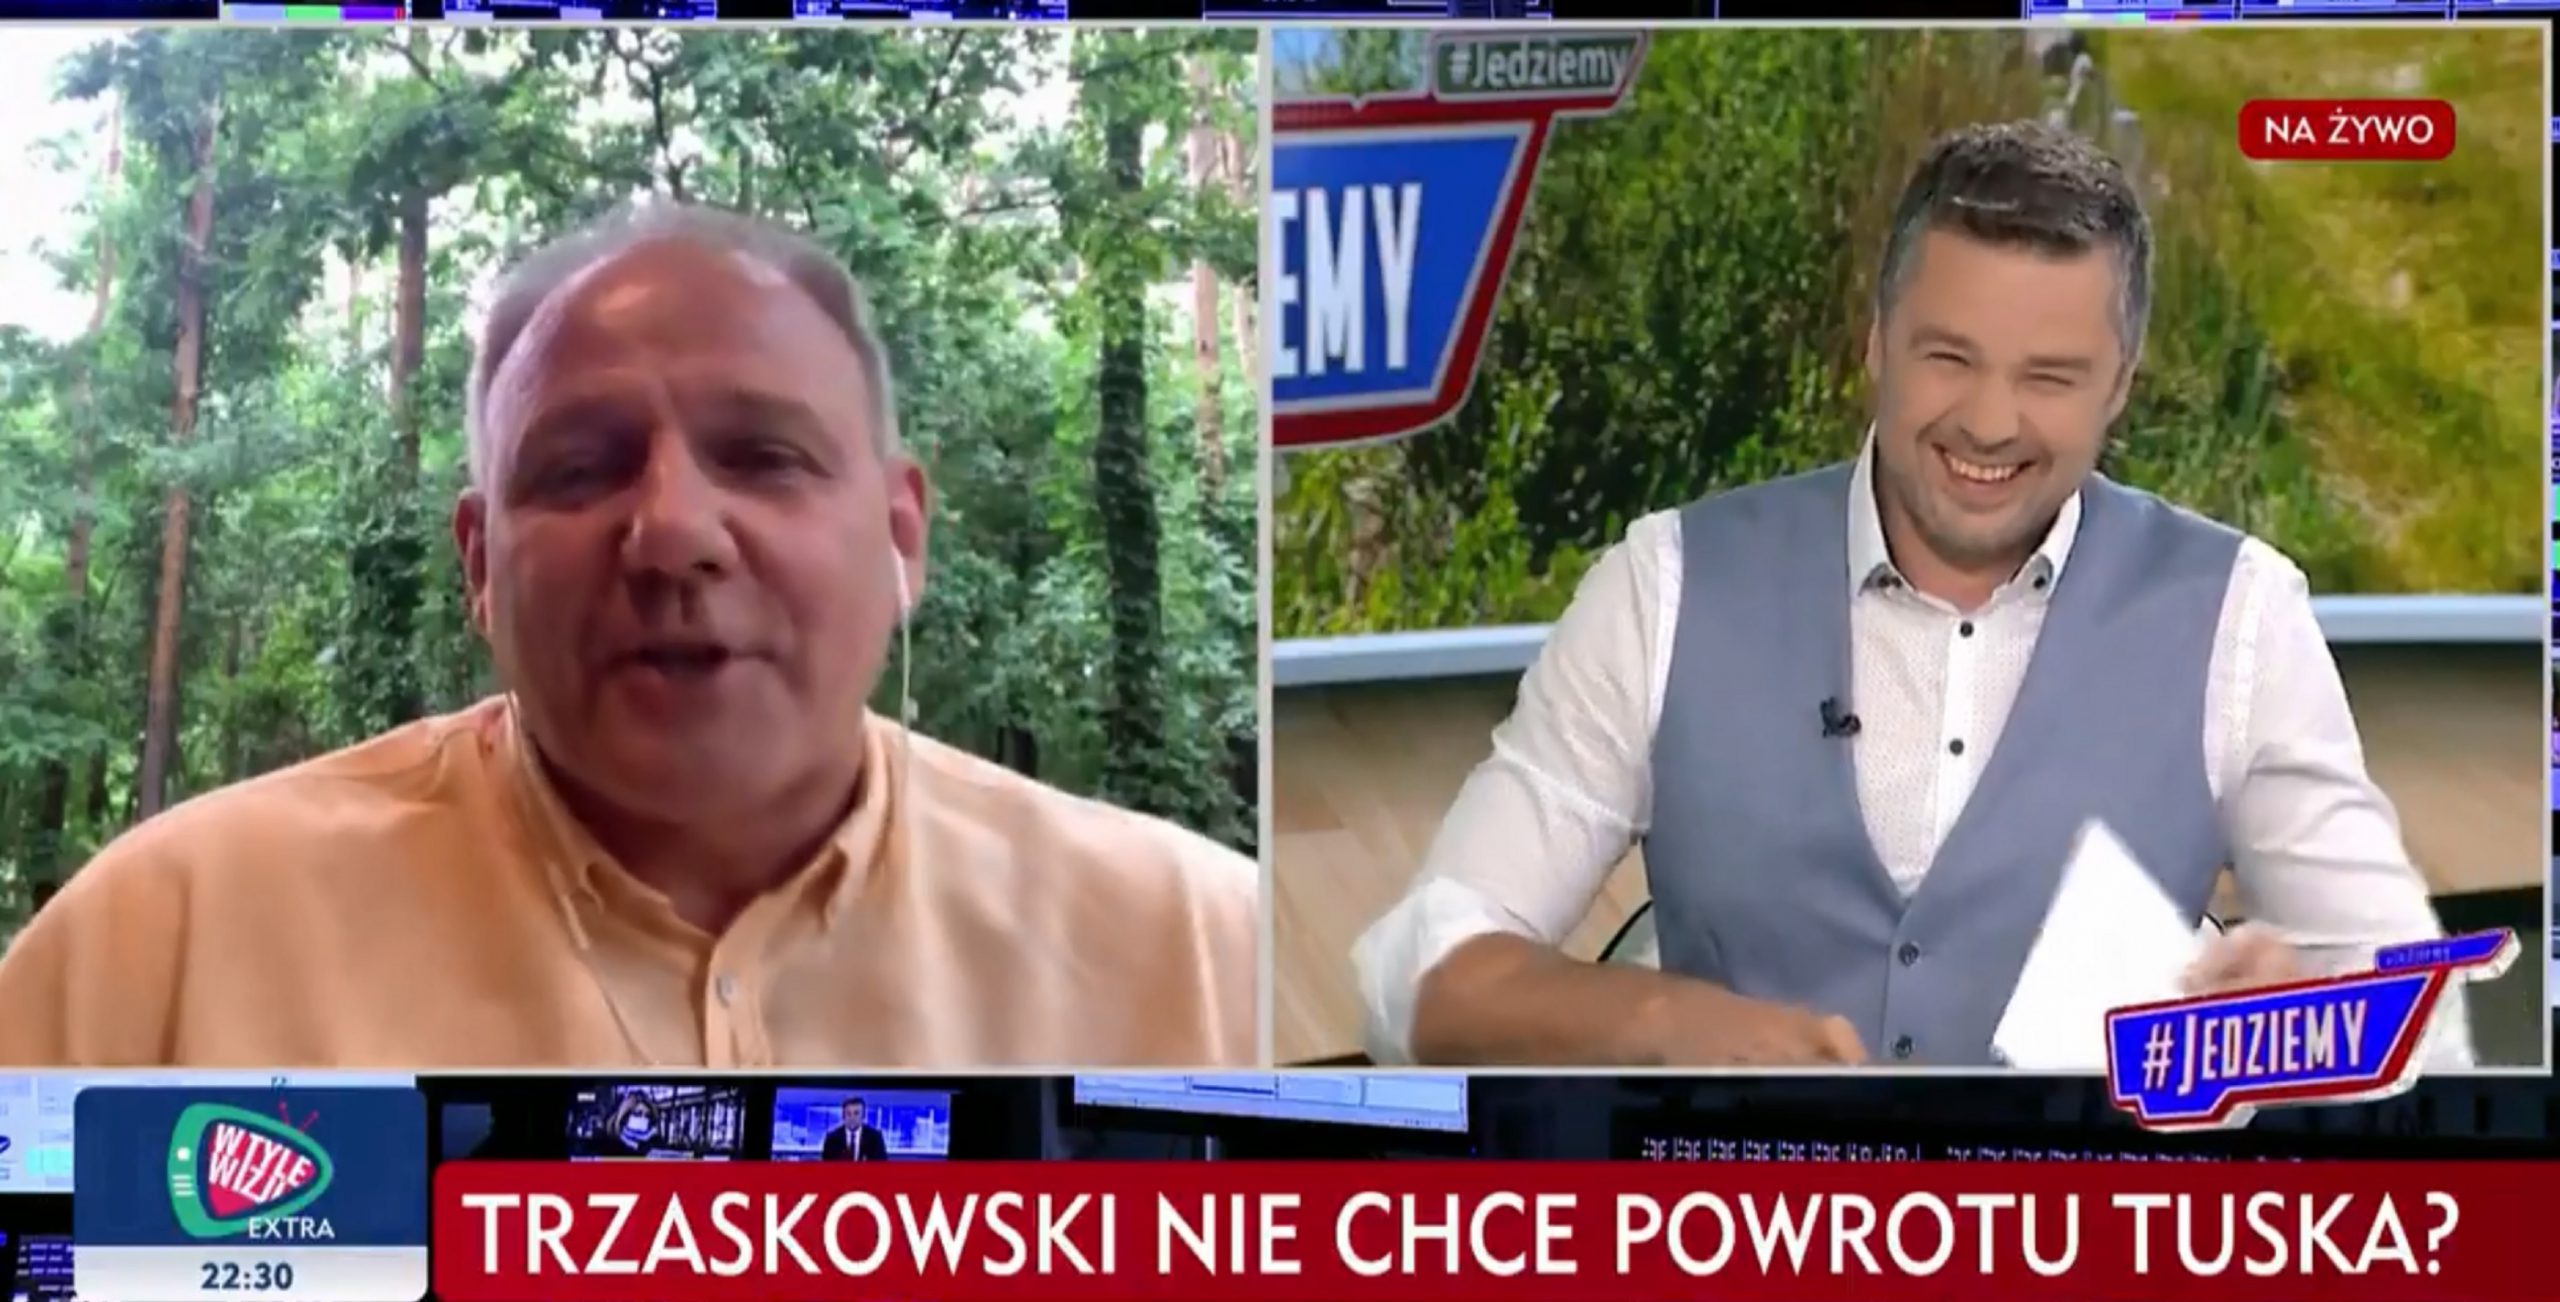 propolski.pl: "TVP, powinniście badać swoich rozmówców alkomatem przed wywiadem". Protasiewicz: "Borys się posuwa. Jeśli Tusk jest gorylem, to Trzaskowski jest...